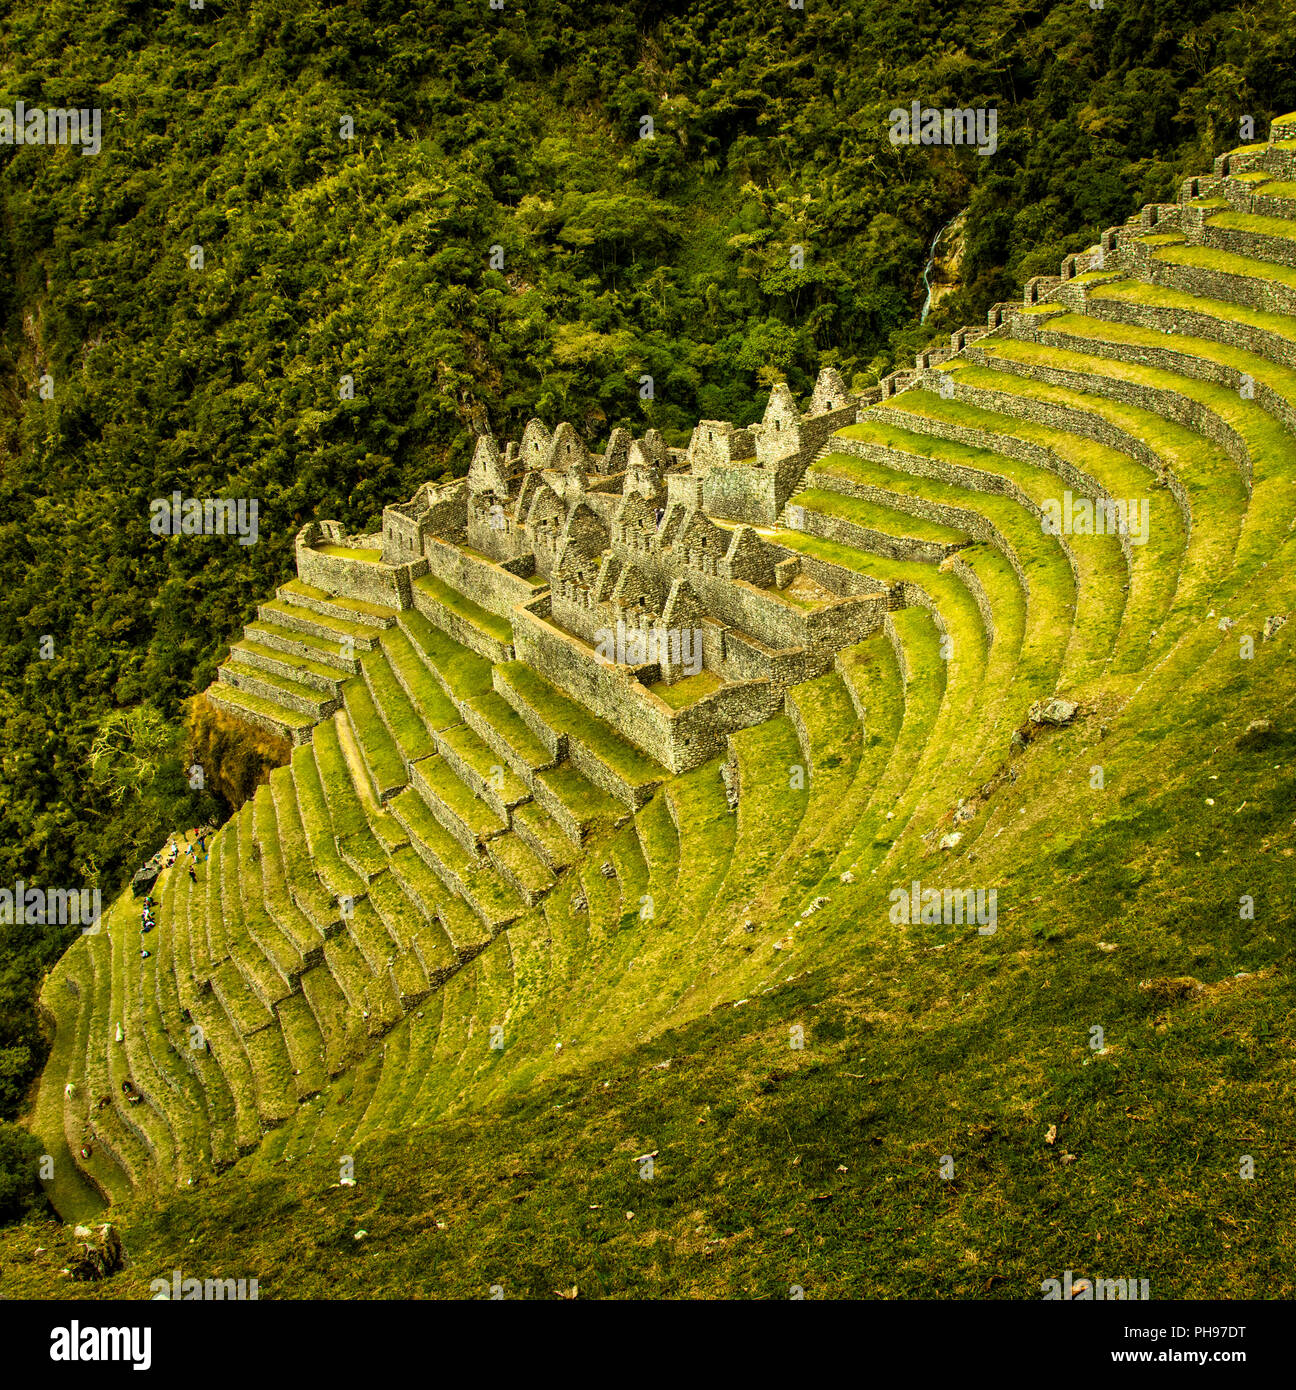 Les ruines Incas de Winay Wayna, y compris les terrasses agricoles et de ses microclimats,, le long du chemin de l'Inca à Machu Picchu. Vallée Sacrée, Pérou Banque D'Images